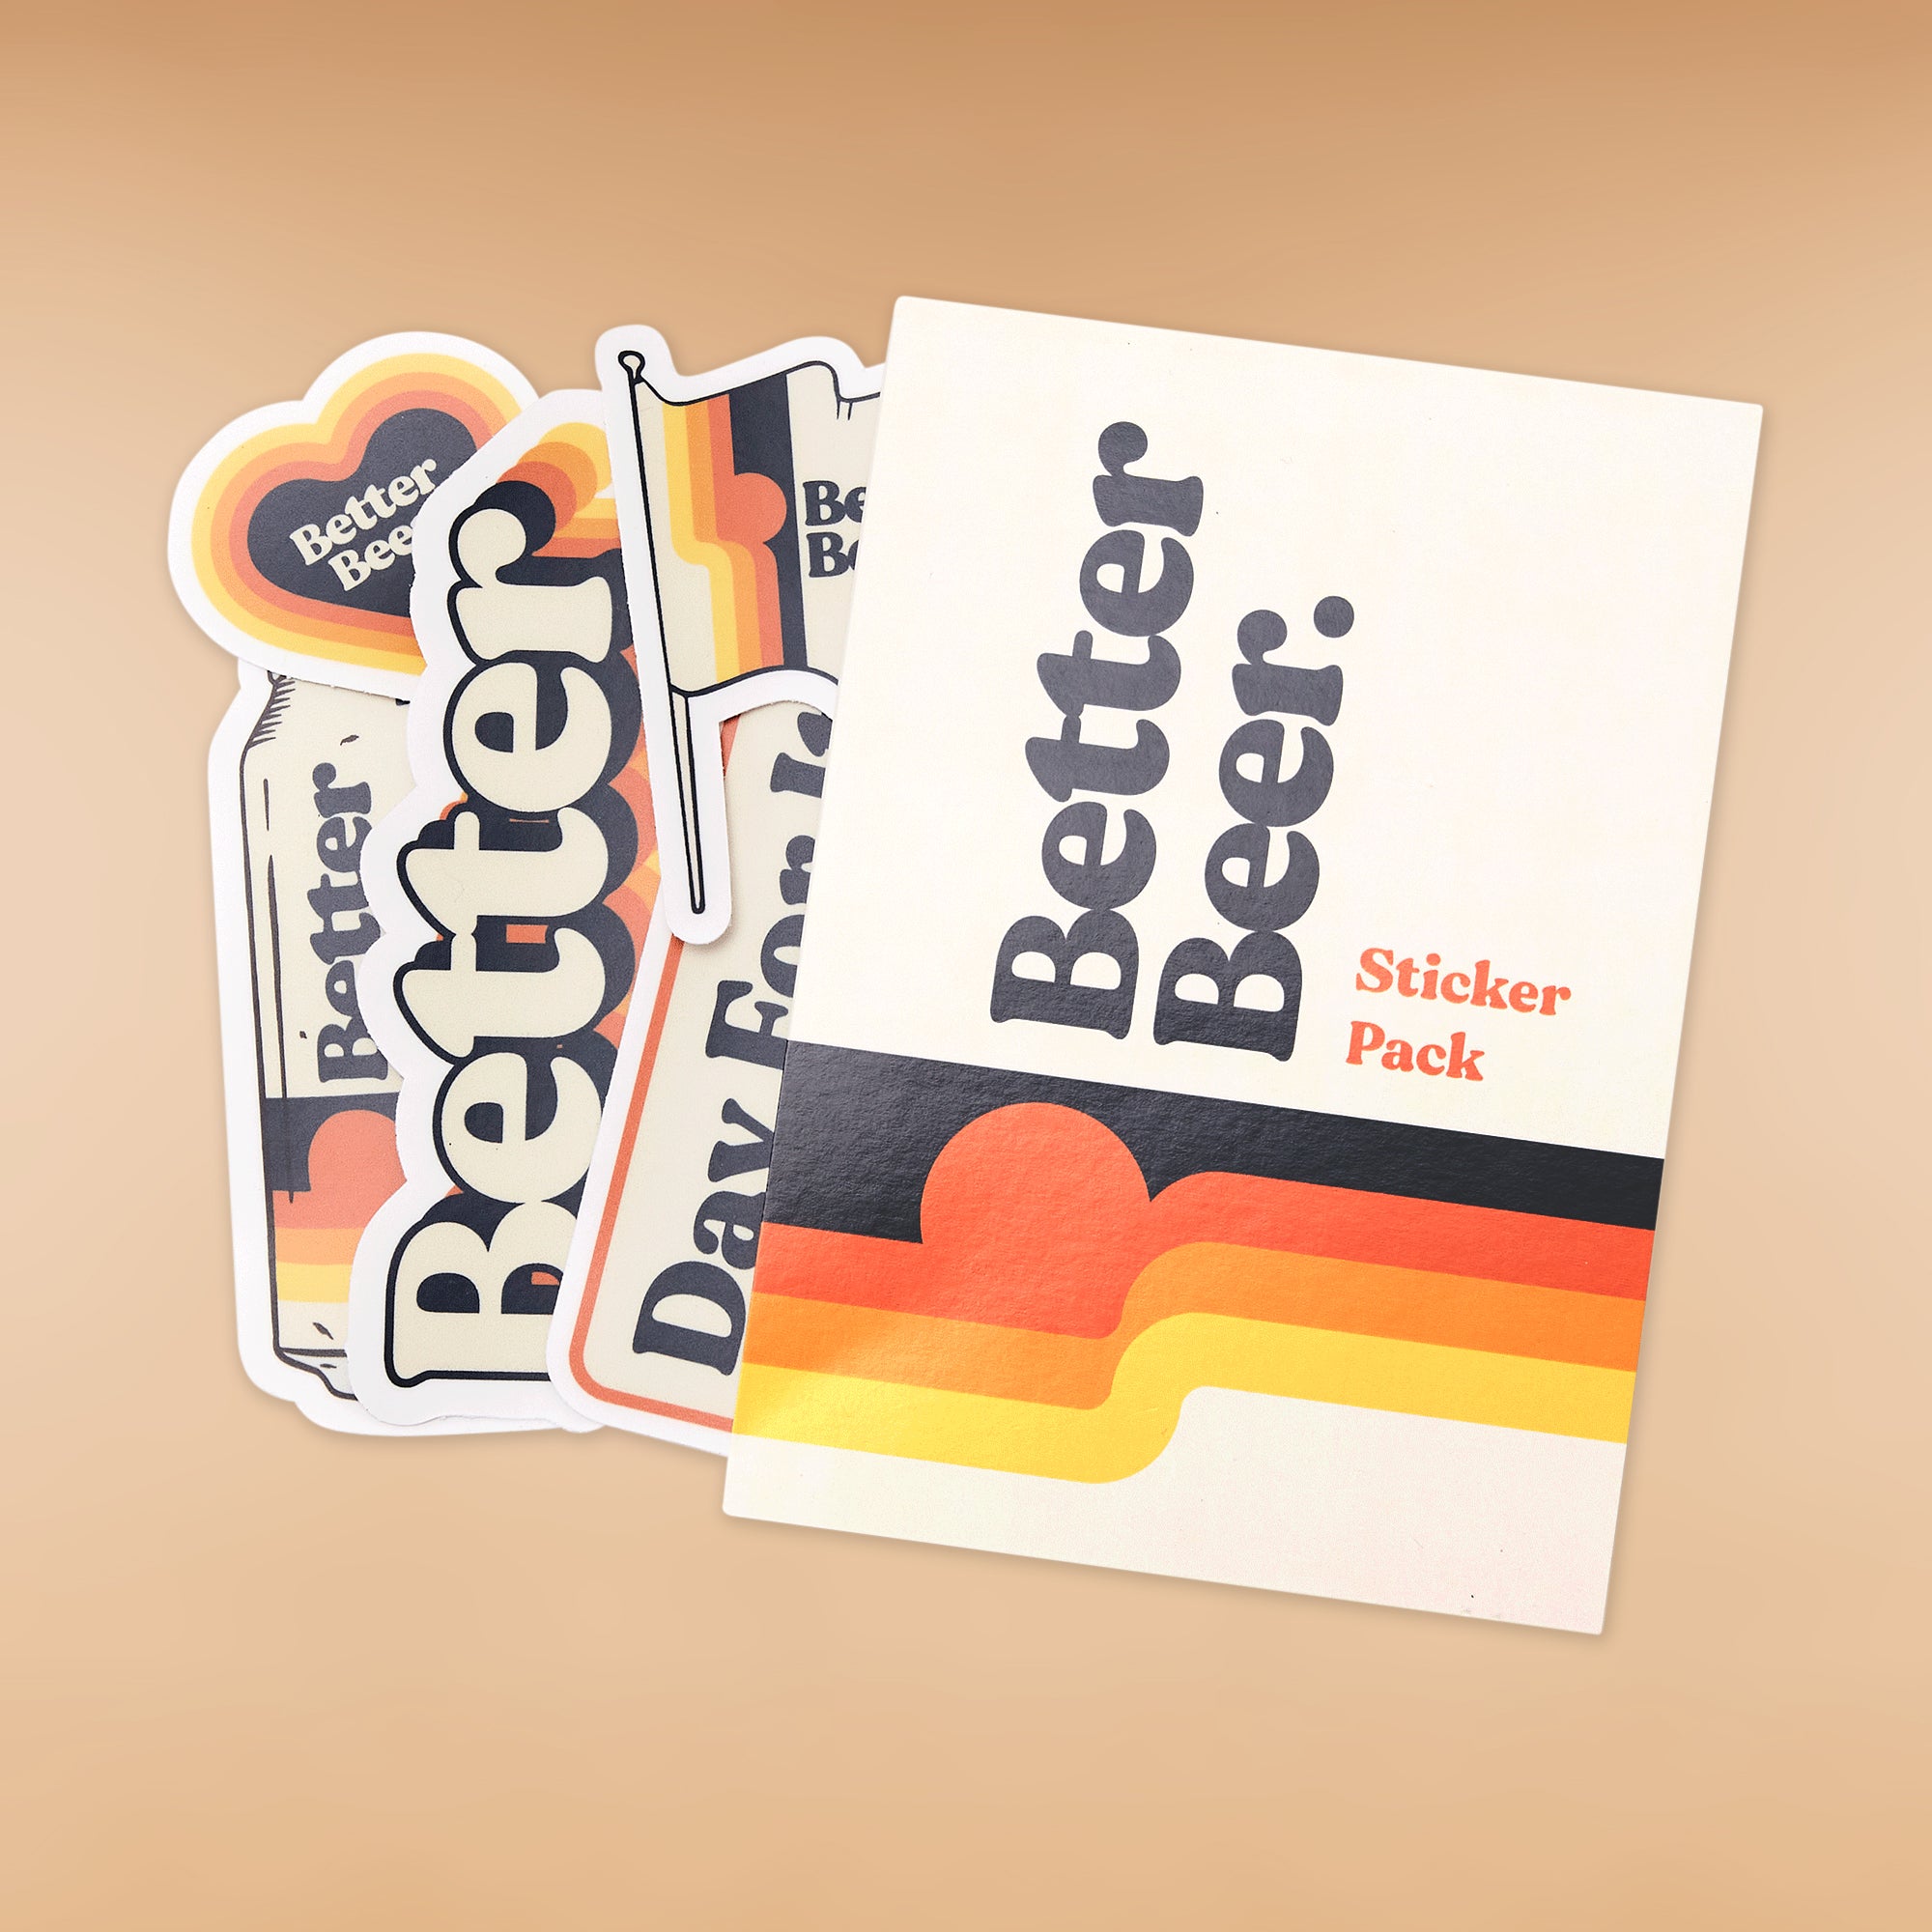 Better Beer Sticker Packs